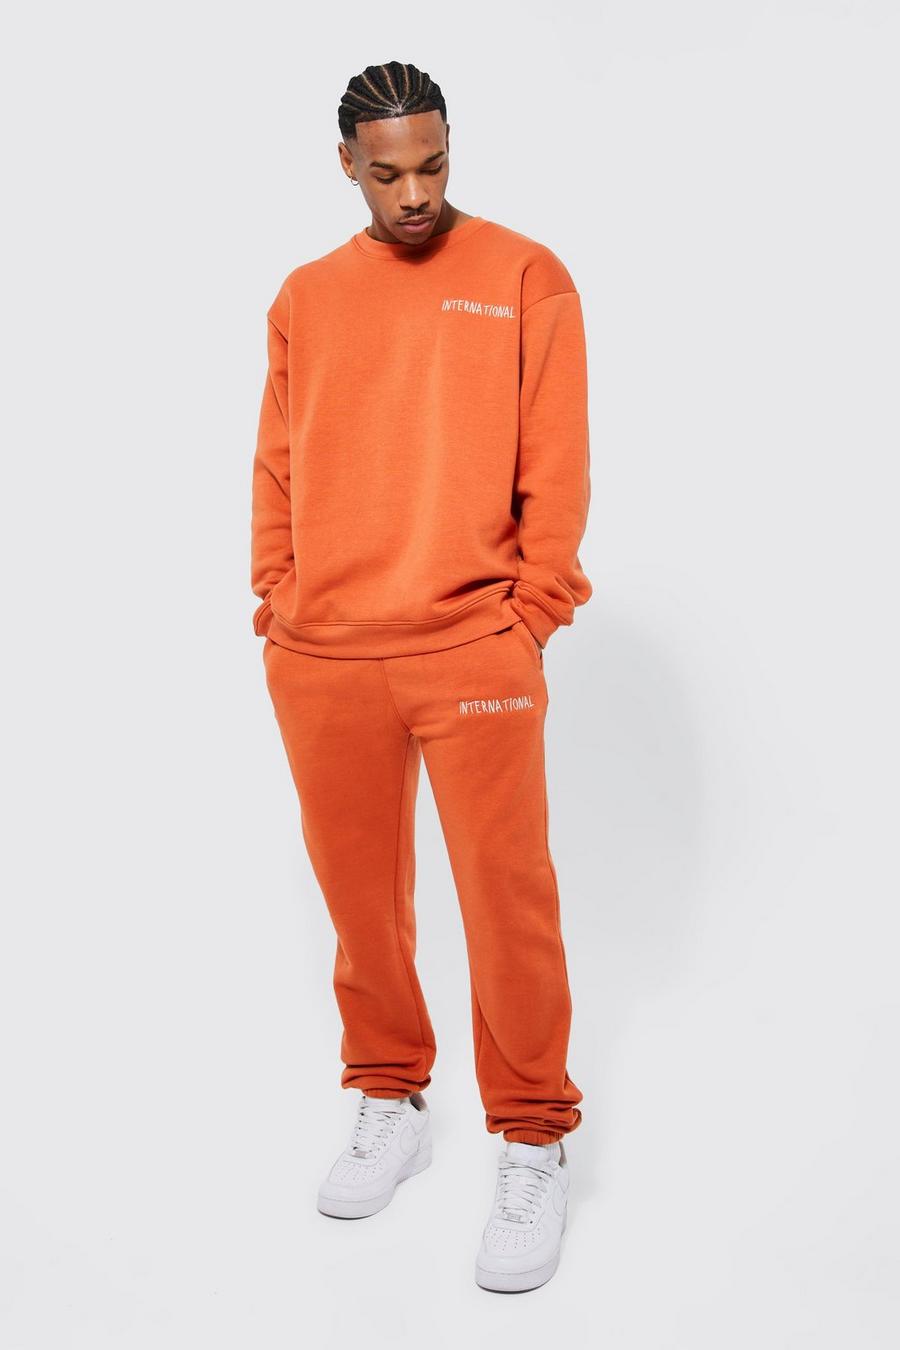 Burnt orange Oversized International Sweatshirt Tracksuit 